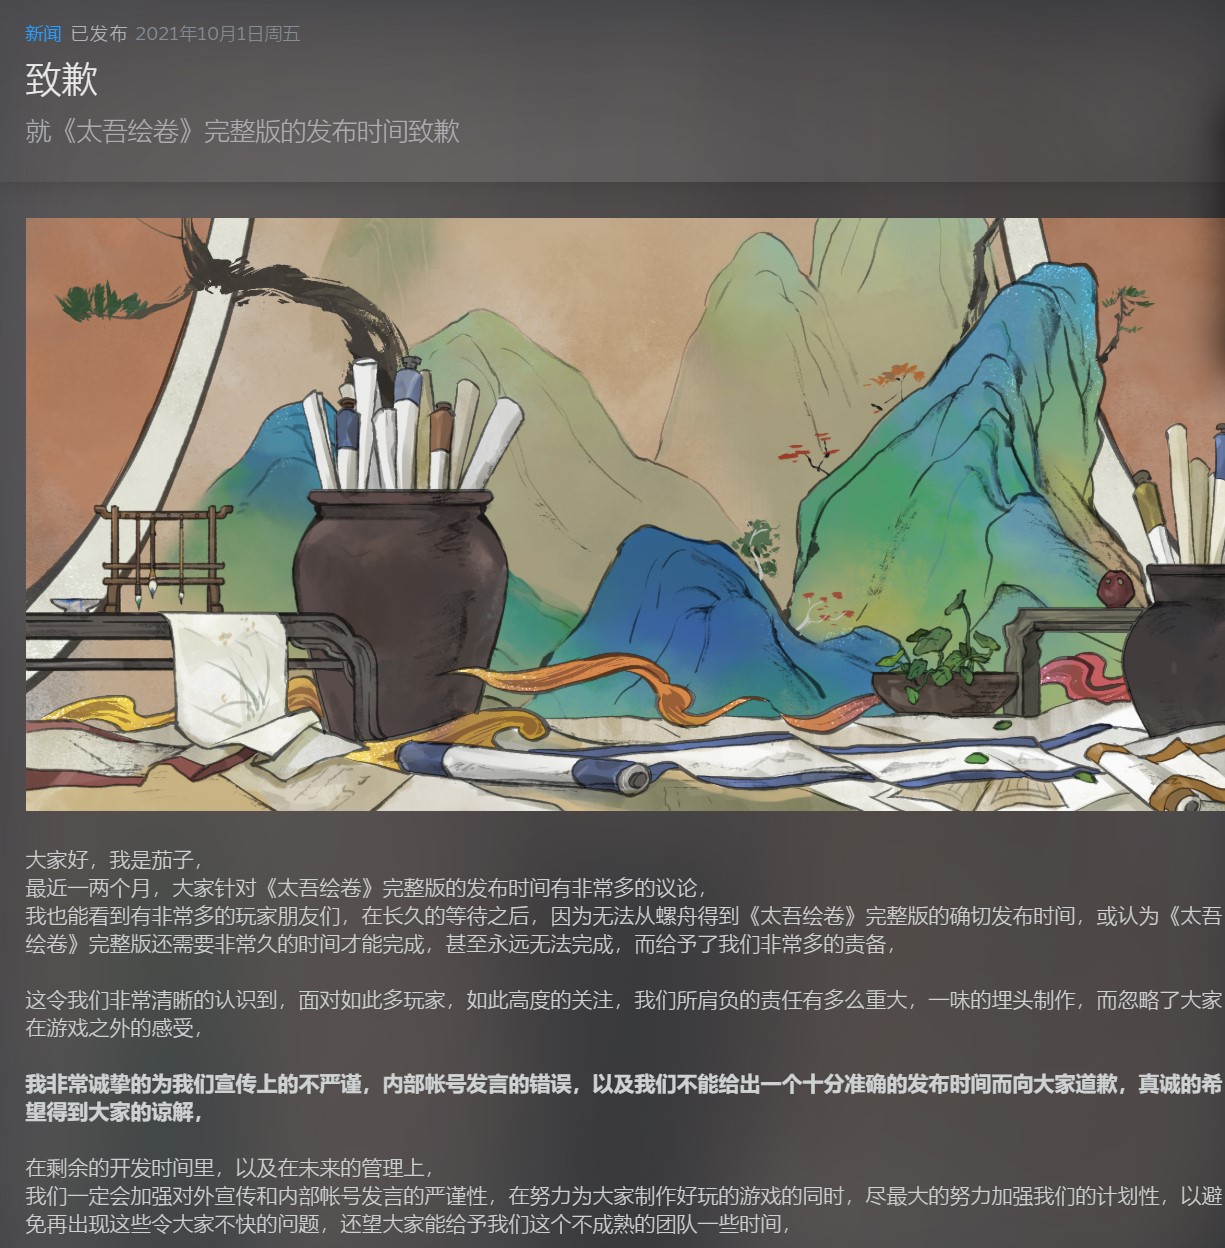 《太吾绘卷》正式版更新一年后，螺舟工作室请玩家们到昆明吃了顿菌子